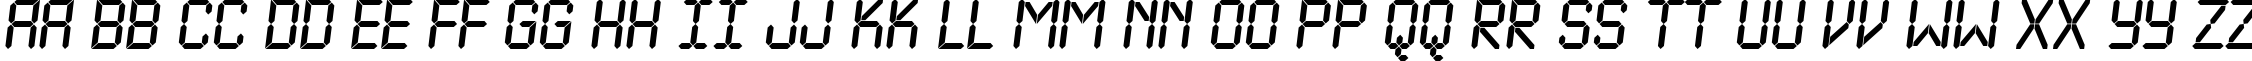 Пример написания английского алфавита шрифтом a_LCDNovaObl